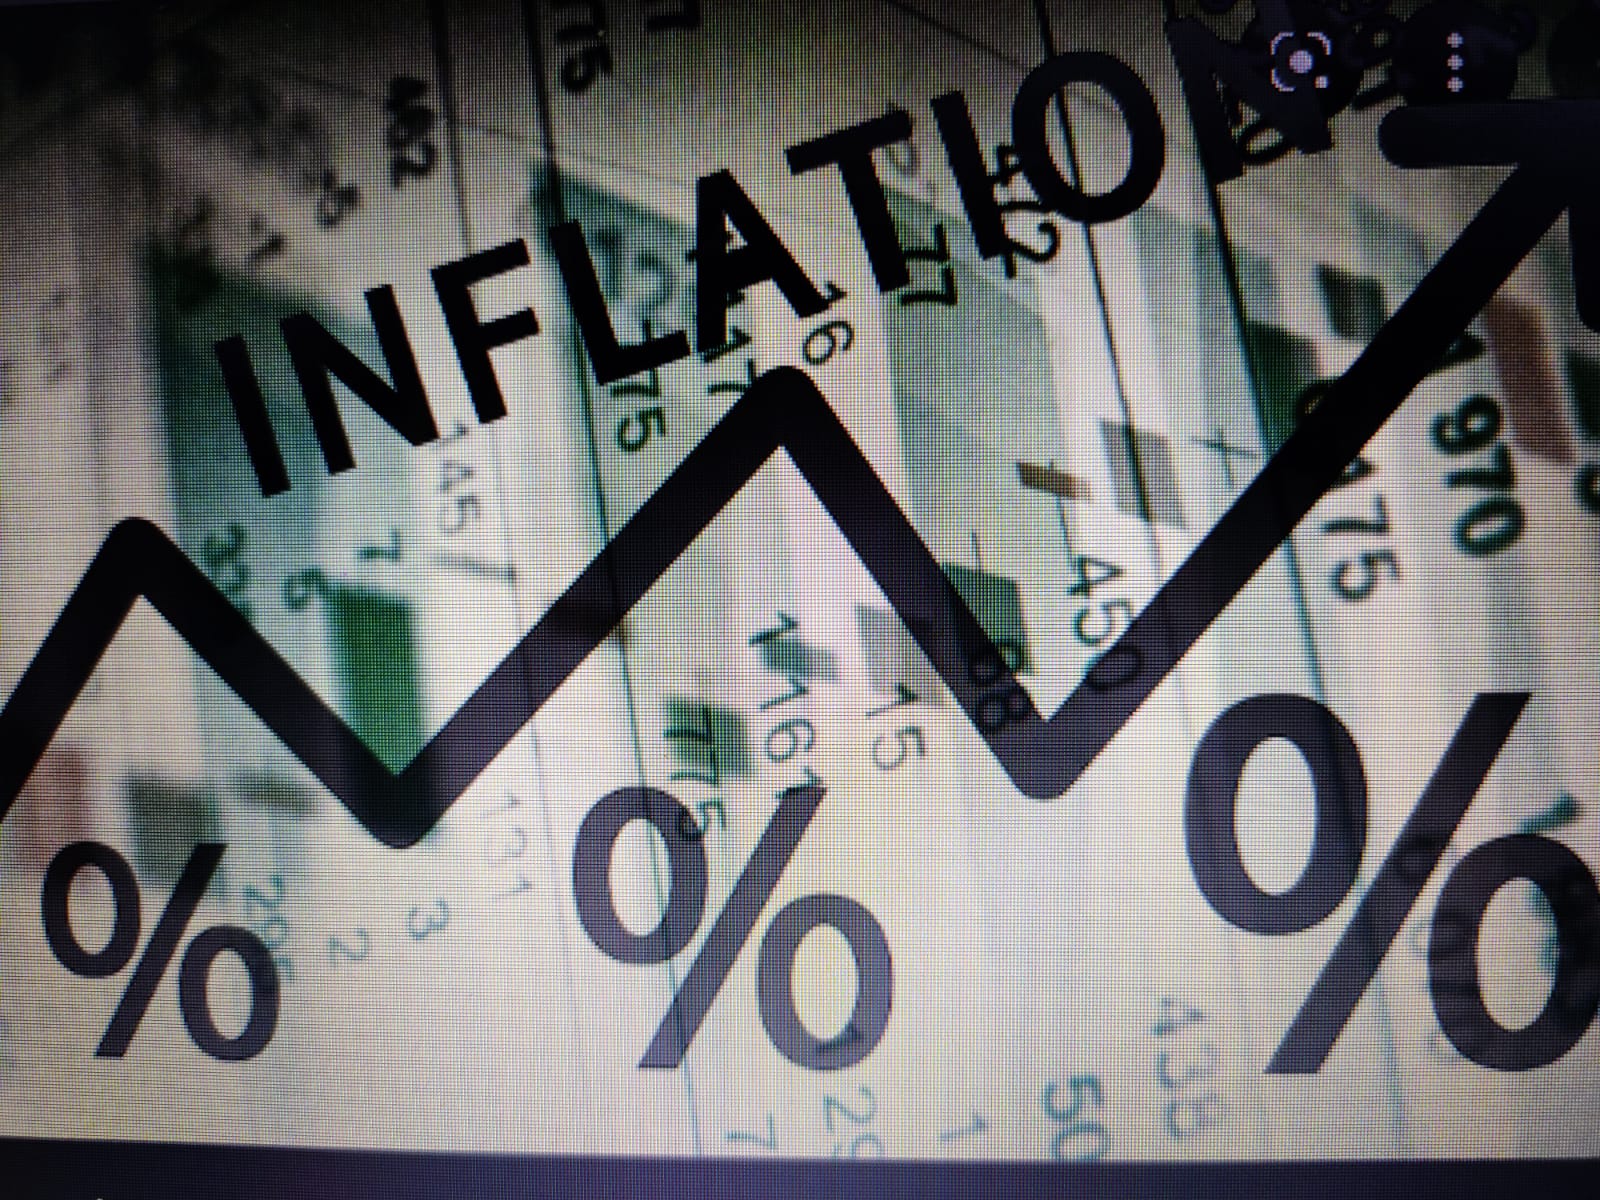 मई महीने के लिये मूल्य आधारित मुद्रास्फीति दर 15.88 प्रतिशत रही